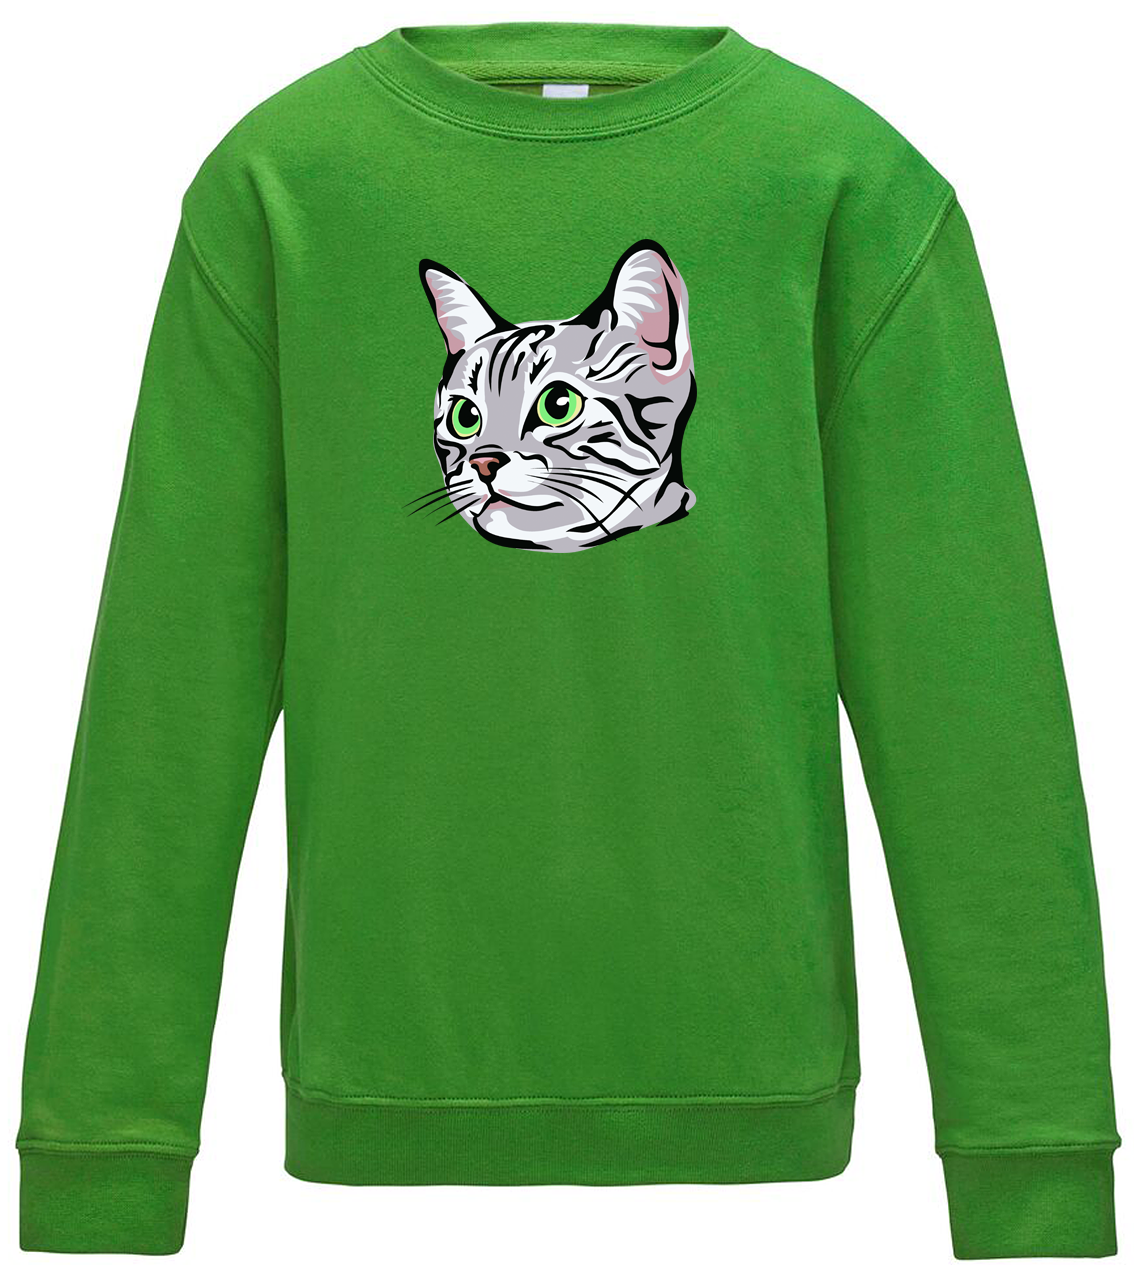 Dětská mikina s kočkou - Zelenoočka Velikost: 9/11 (134/146), Barva: Zelená